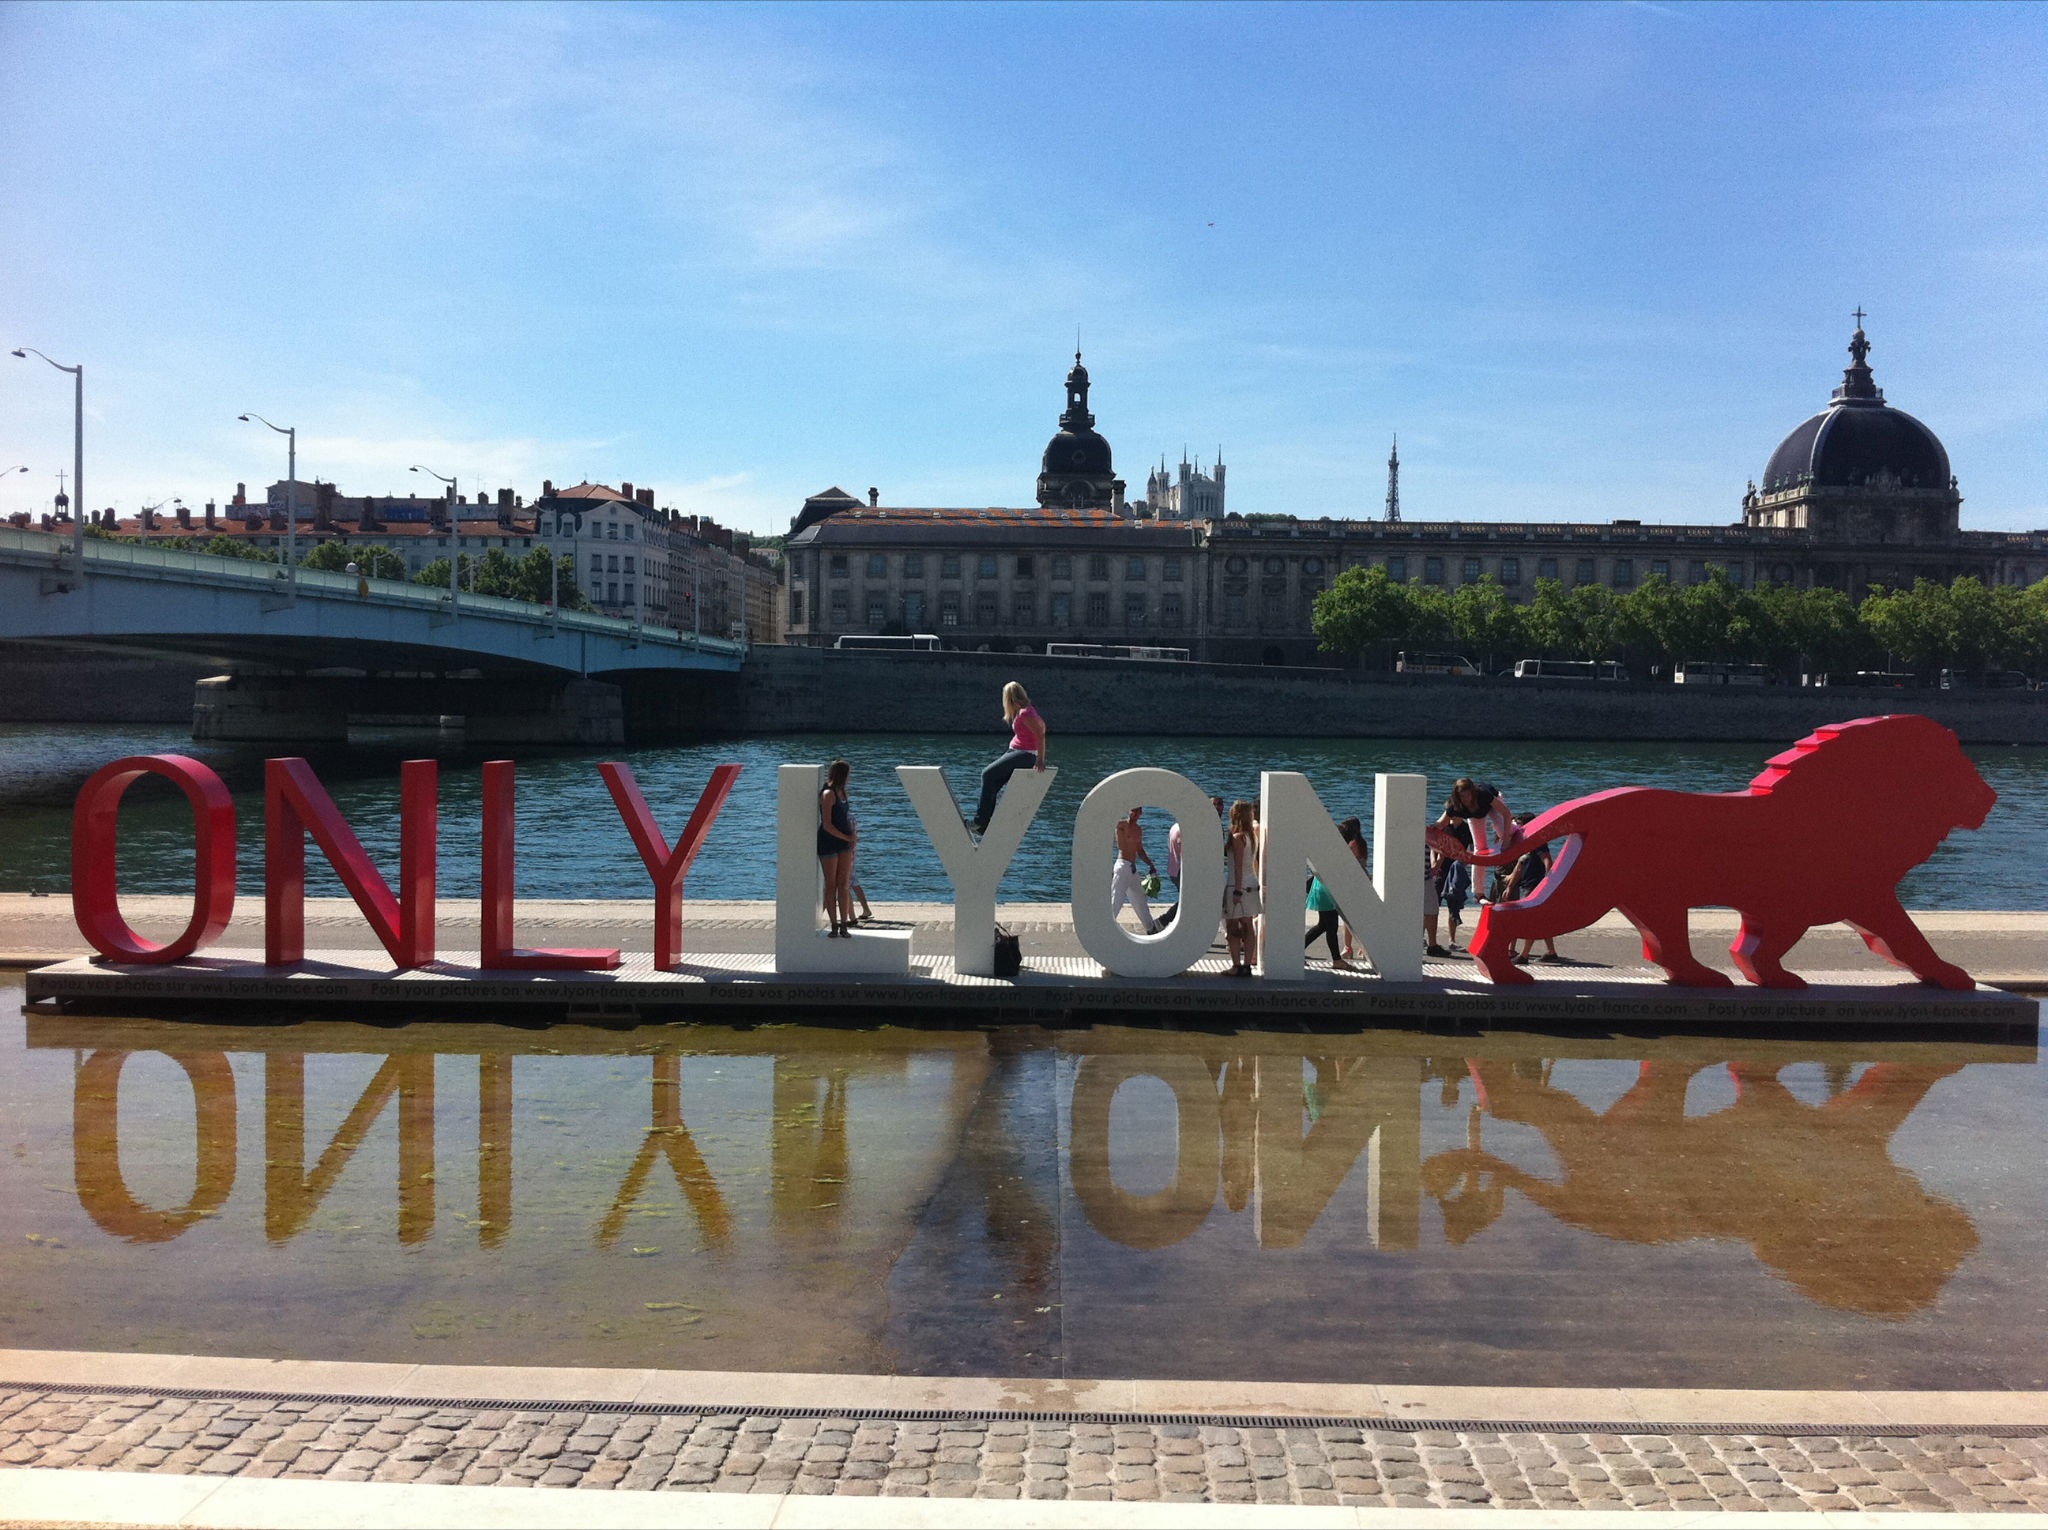 Визуально-текстовый объект «ONLY LYON» на набережной на фоне дворца.